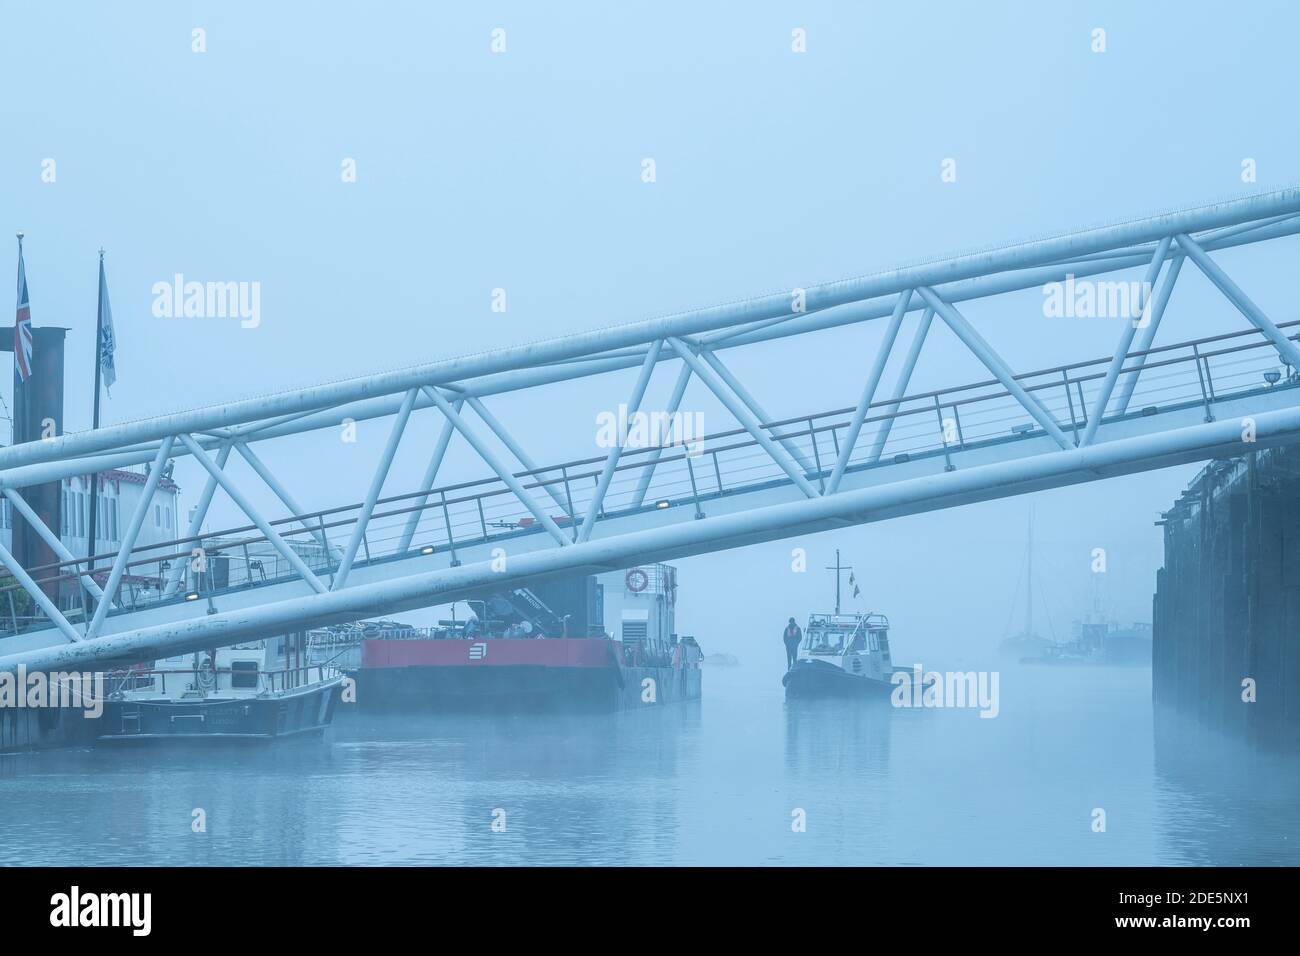 Bateau à Butlers Wharf Pier et River Thames dans un brouillard épais et brumeux, par temps brumeux et brumeux dans le centre de Londres pendant le confinement du coronavirus Covid-19, Angleterre, Royaume-Uni Banque D'Images